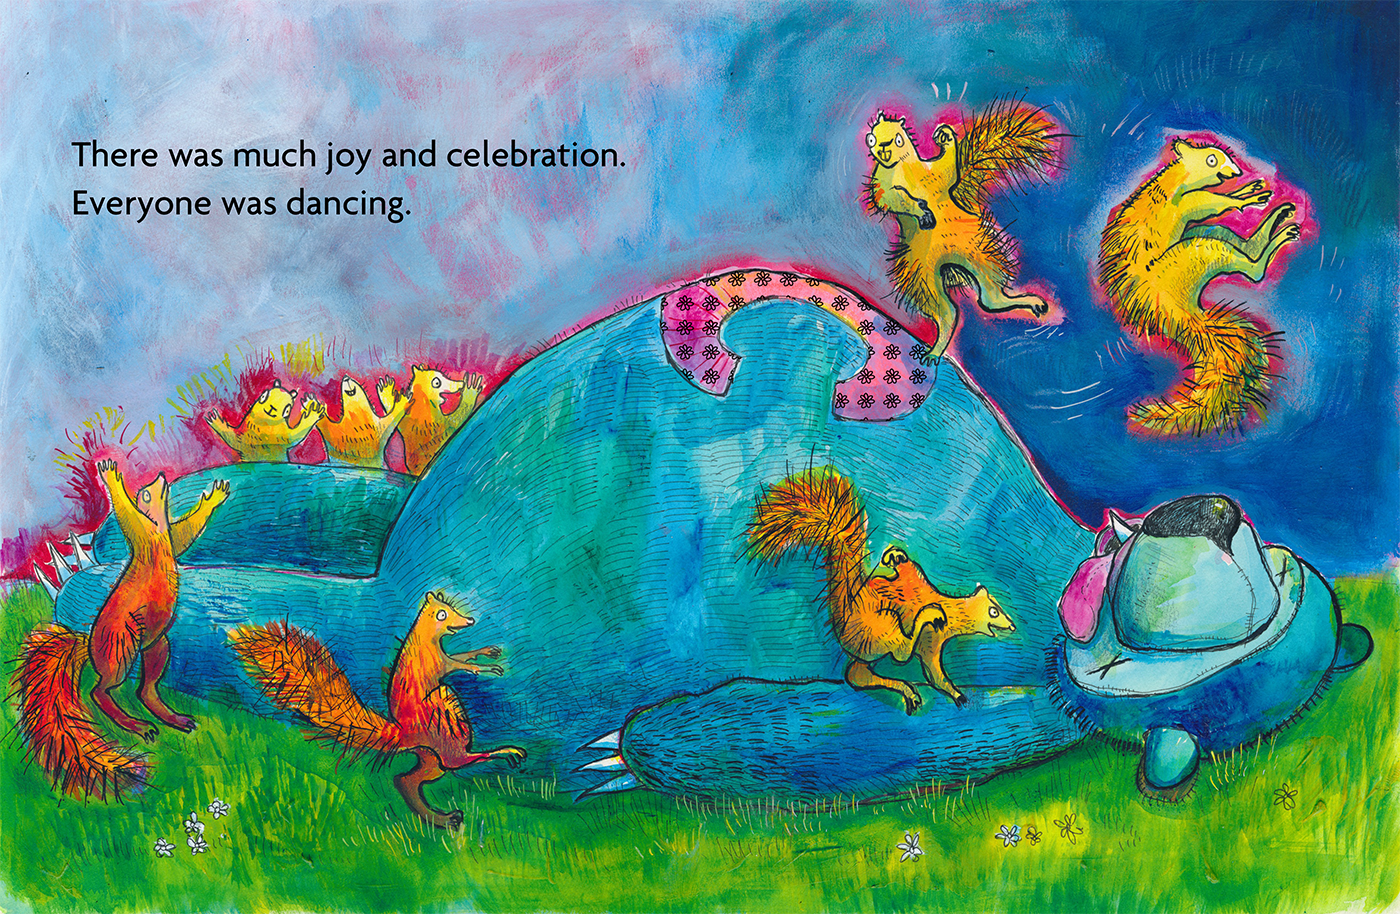 Yermit-illustration-celebration